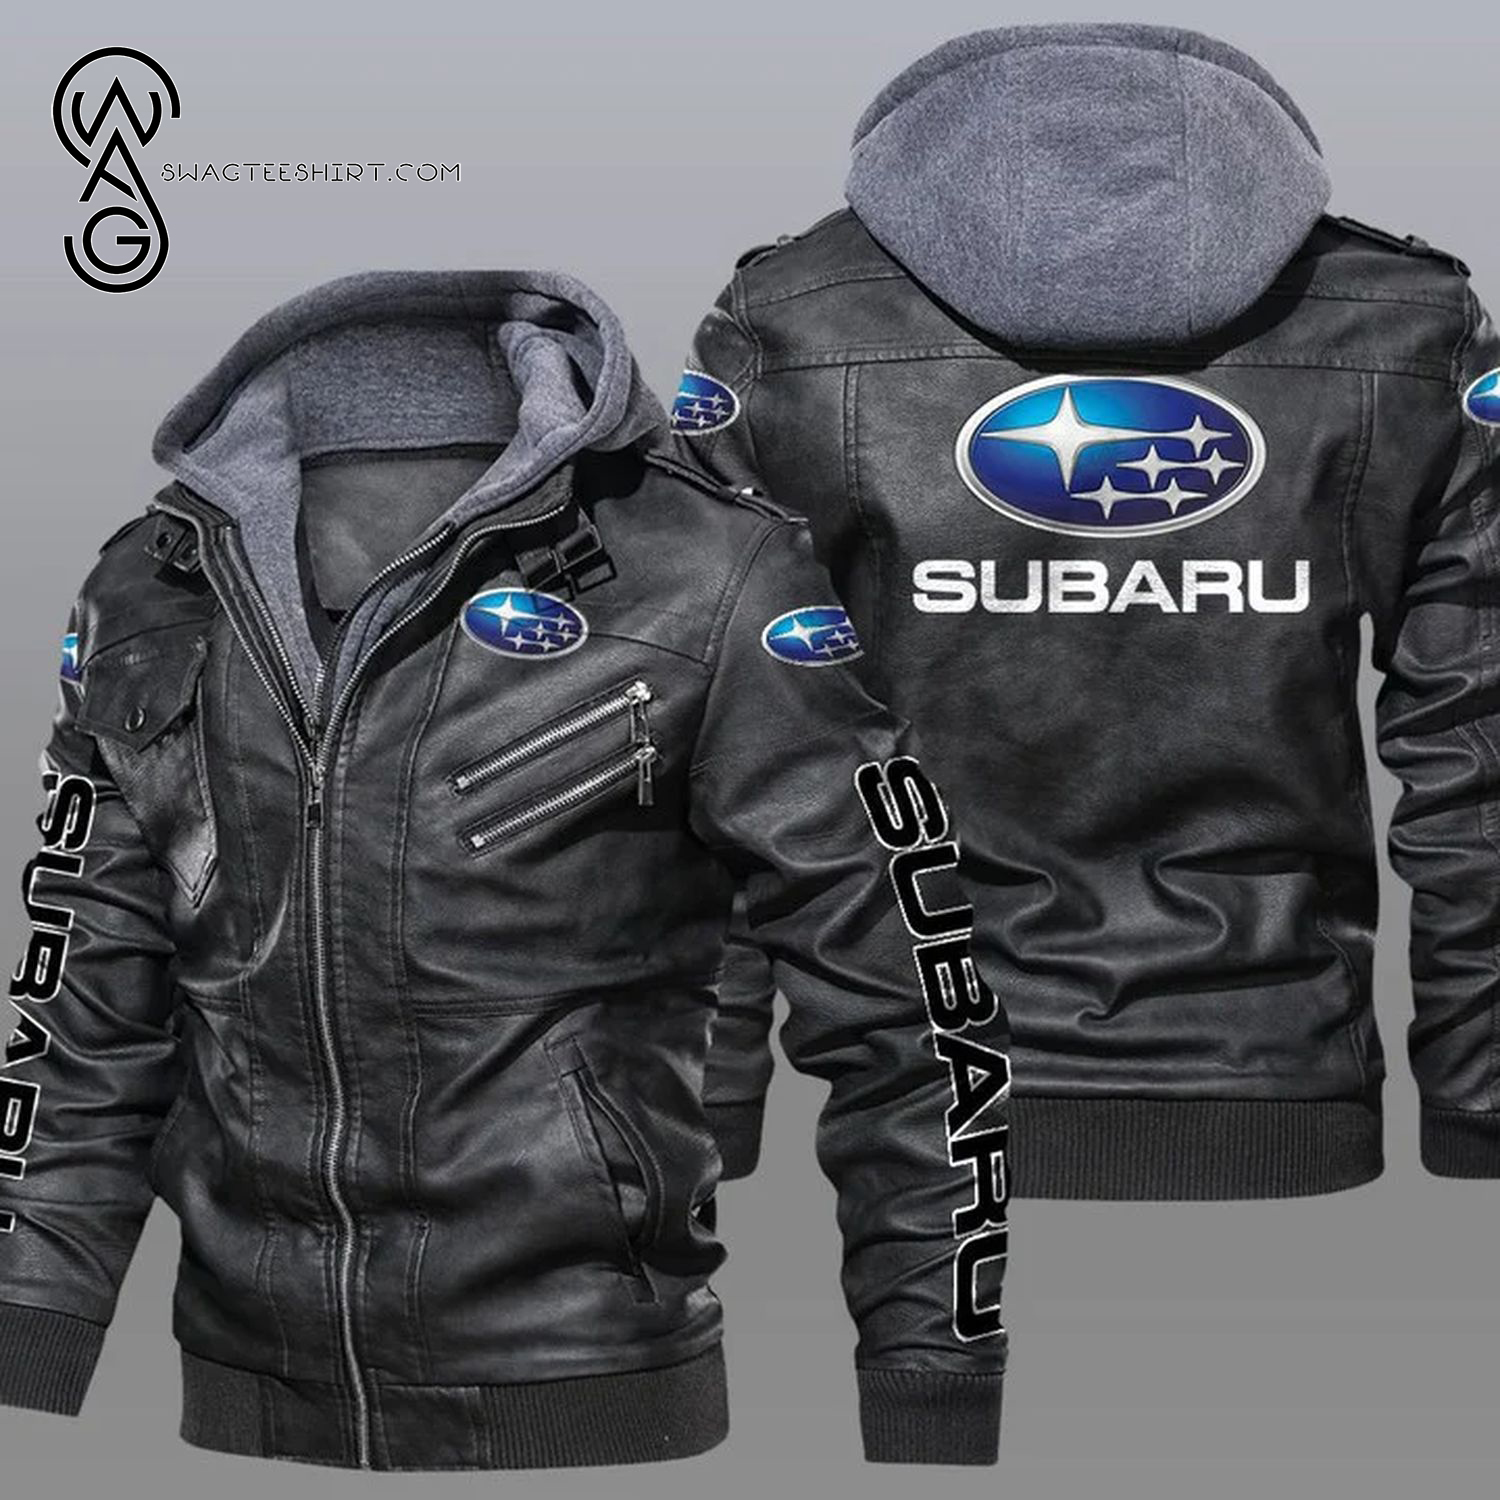 Subaru Car Leather Jacket